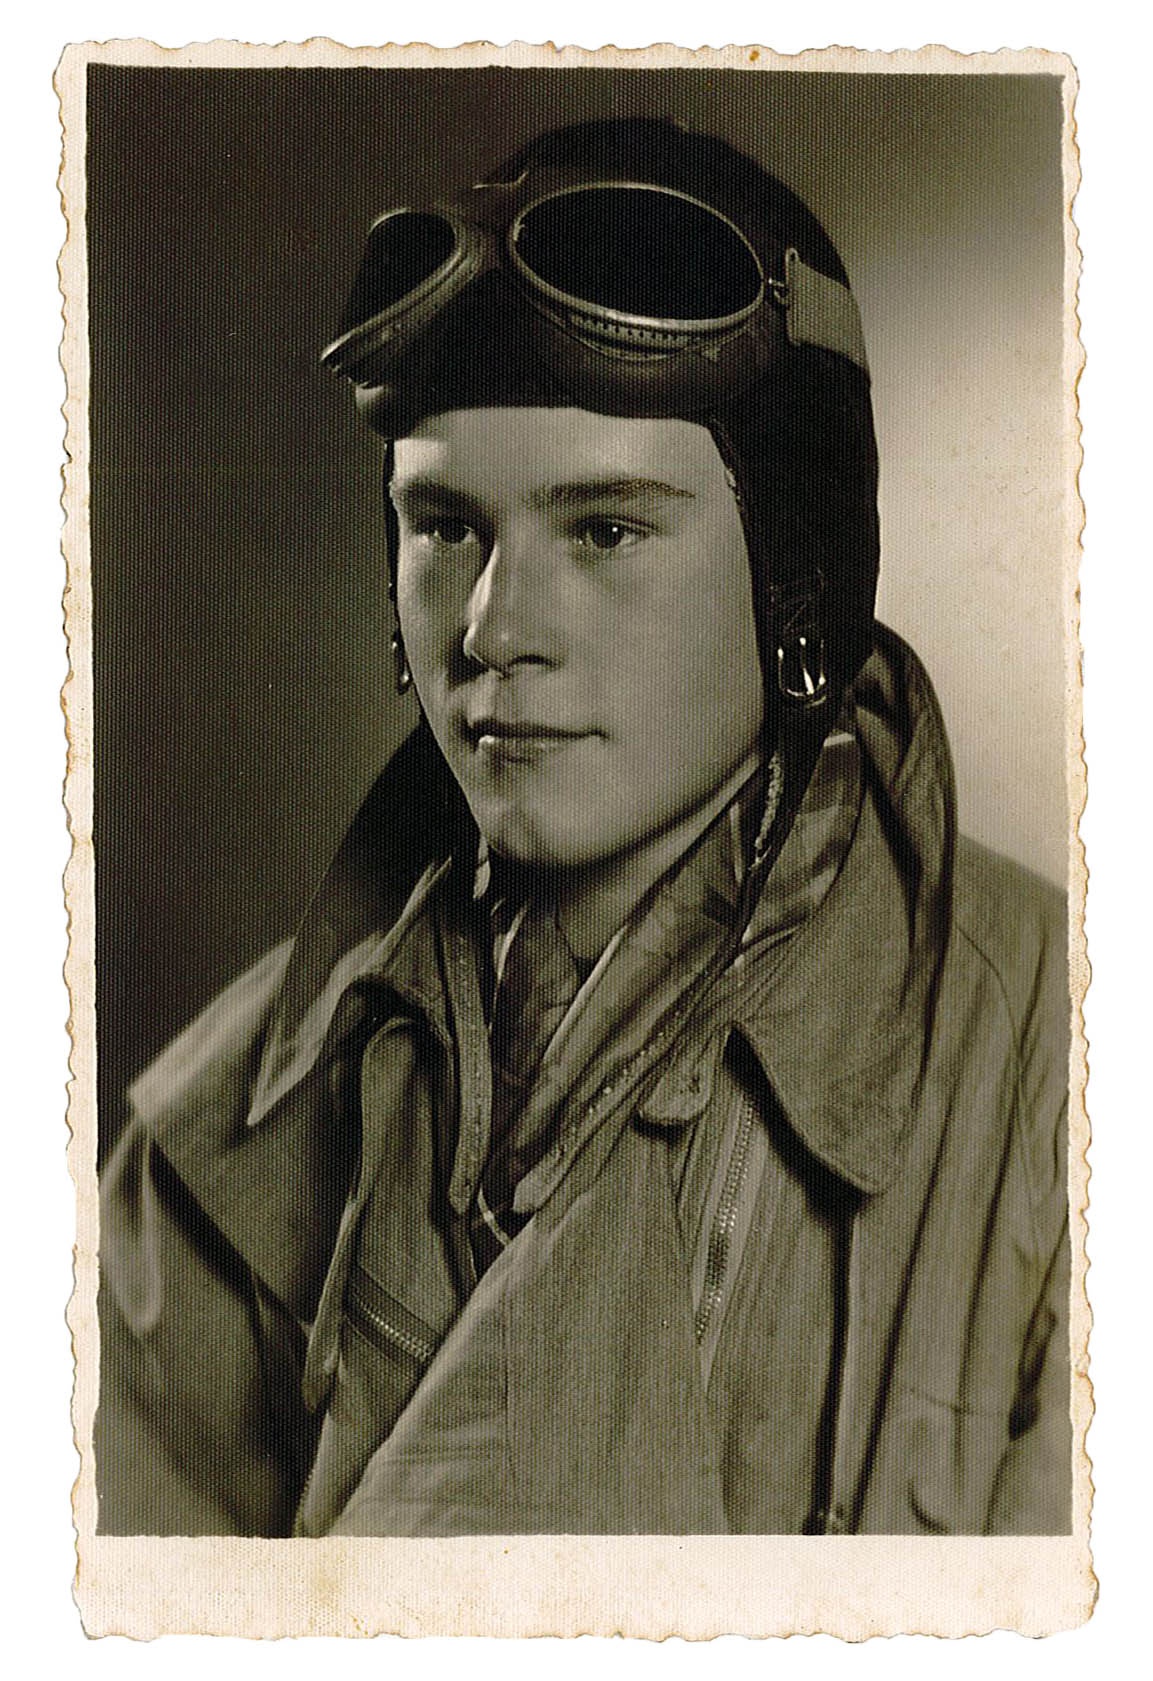 Fotopostkarte mit Porträtfoto des Soldaten Werner Gröbke als Flugschüler, 1943 (Museum Wolmirstedt RR-F)